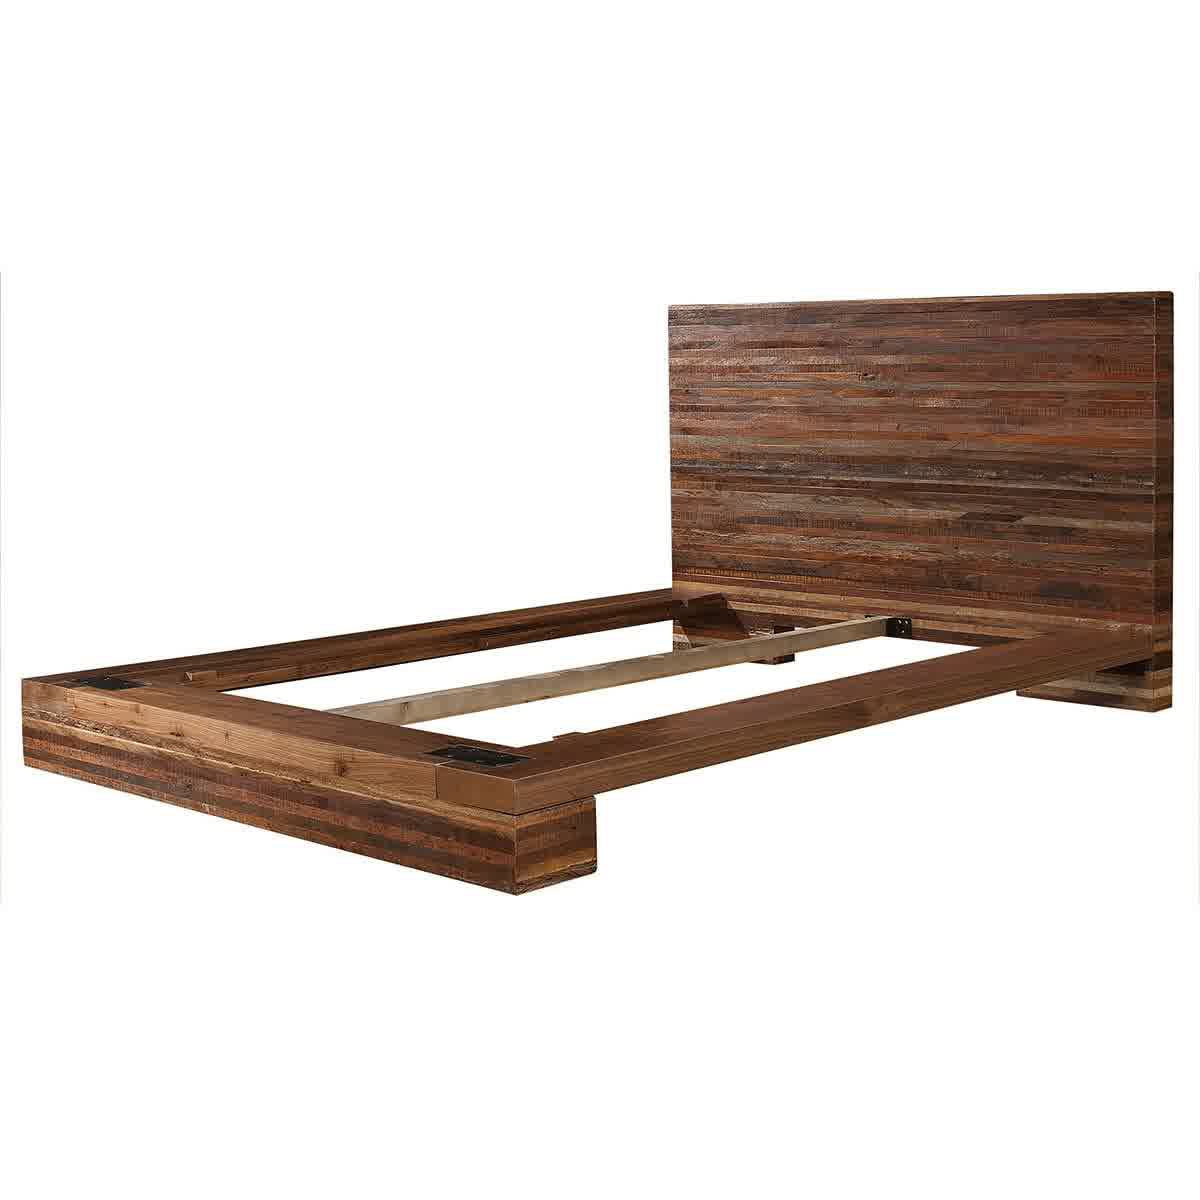 Unique Image of: Platform Bed Frame Queen Plan wood platform bed frame queen